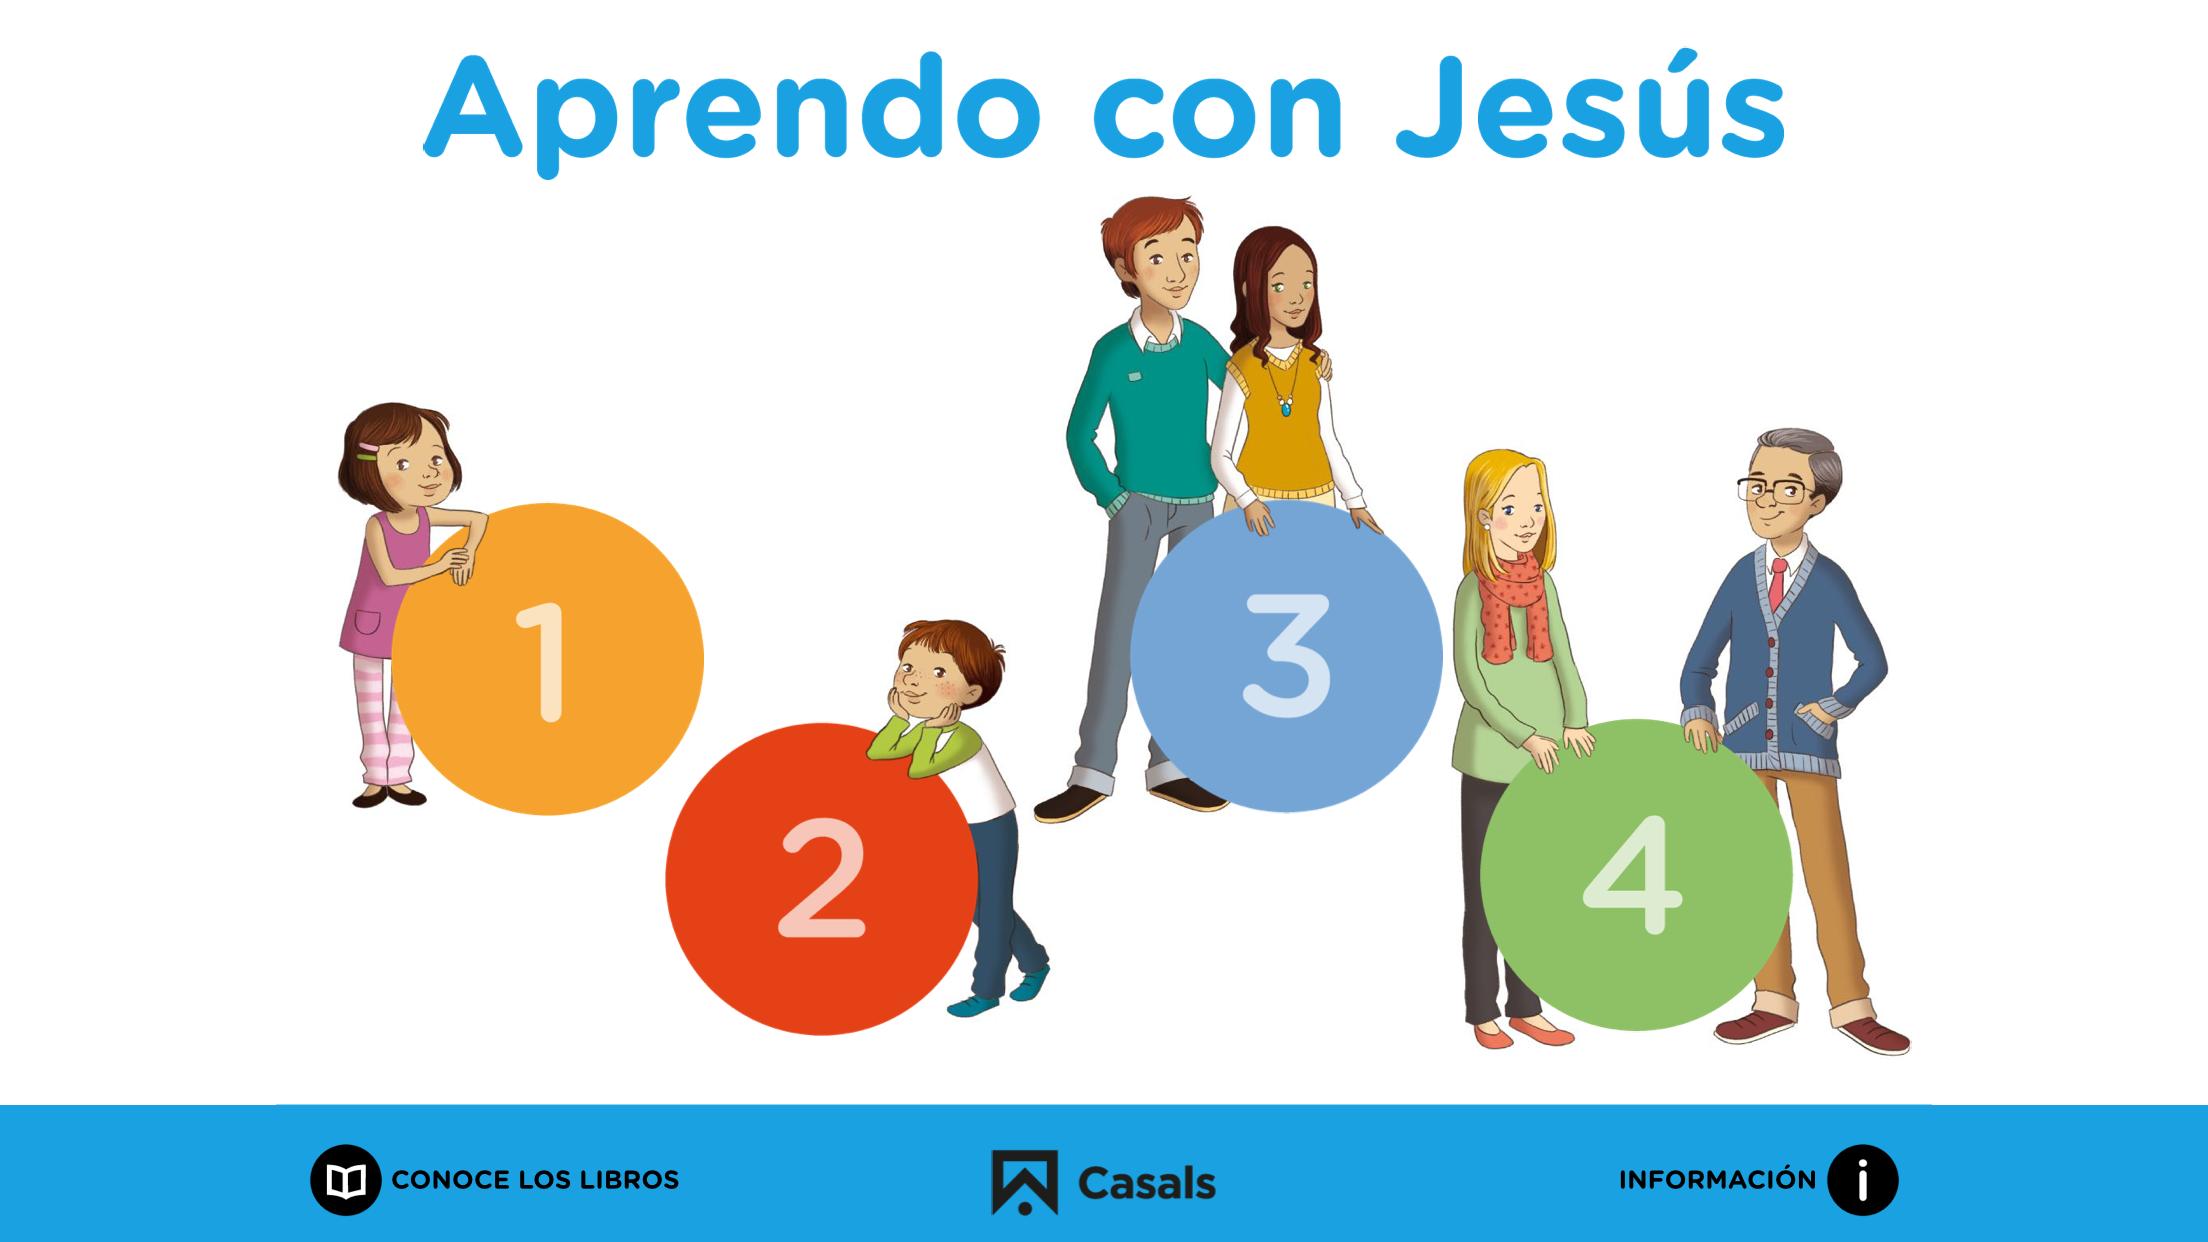 Aprendo con Jesús for Android - APK Download